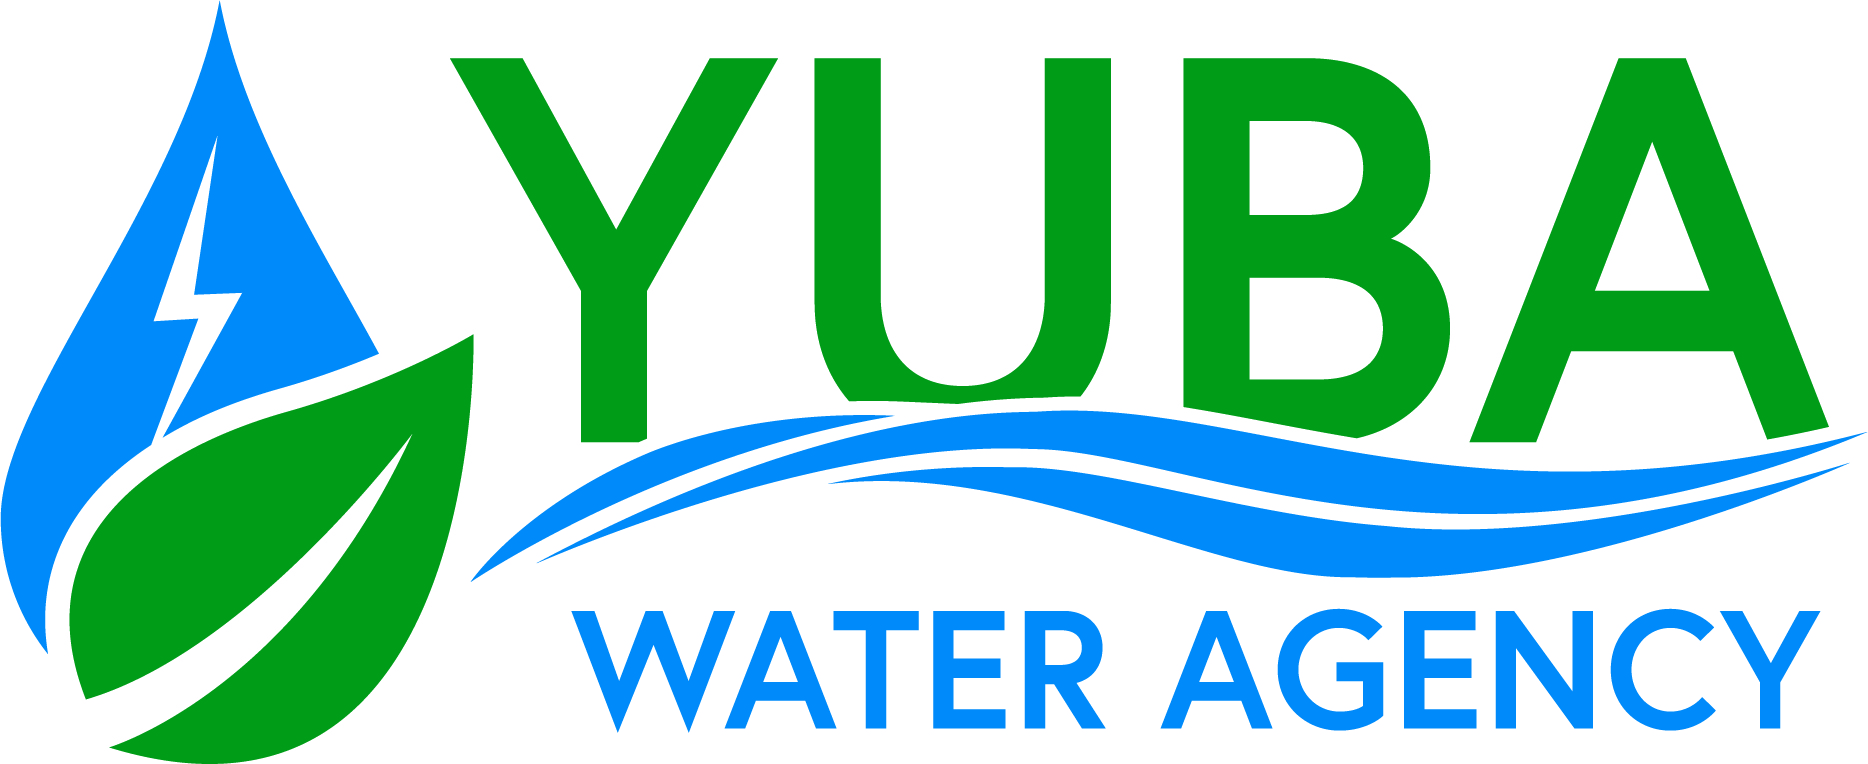 Gold_Yuba Water Agency.jpg